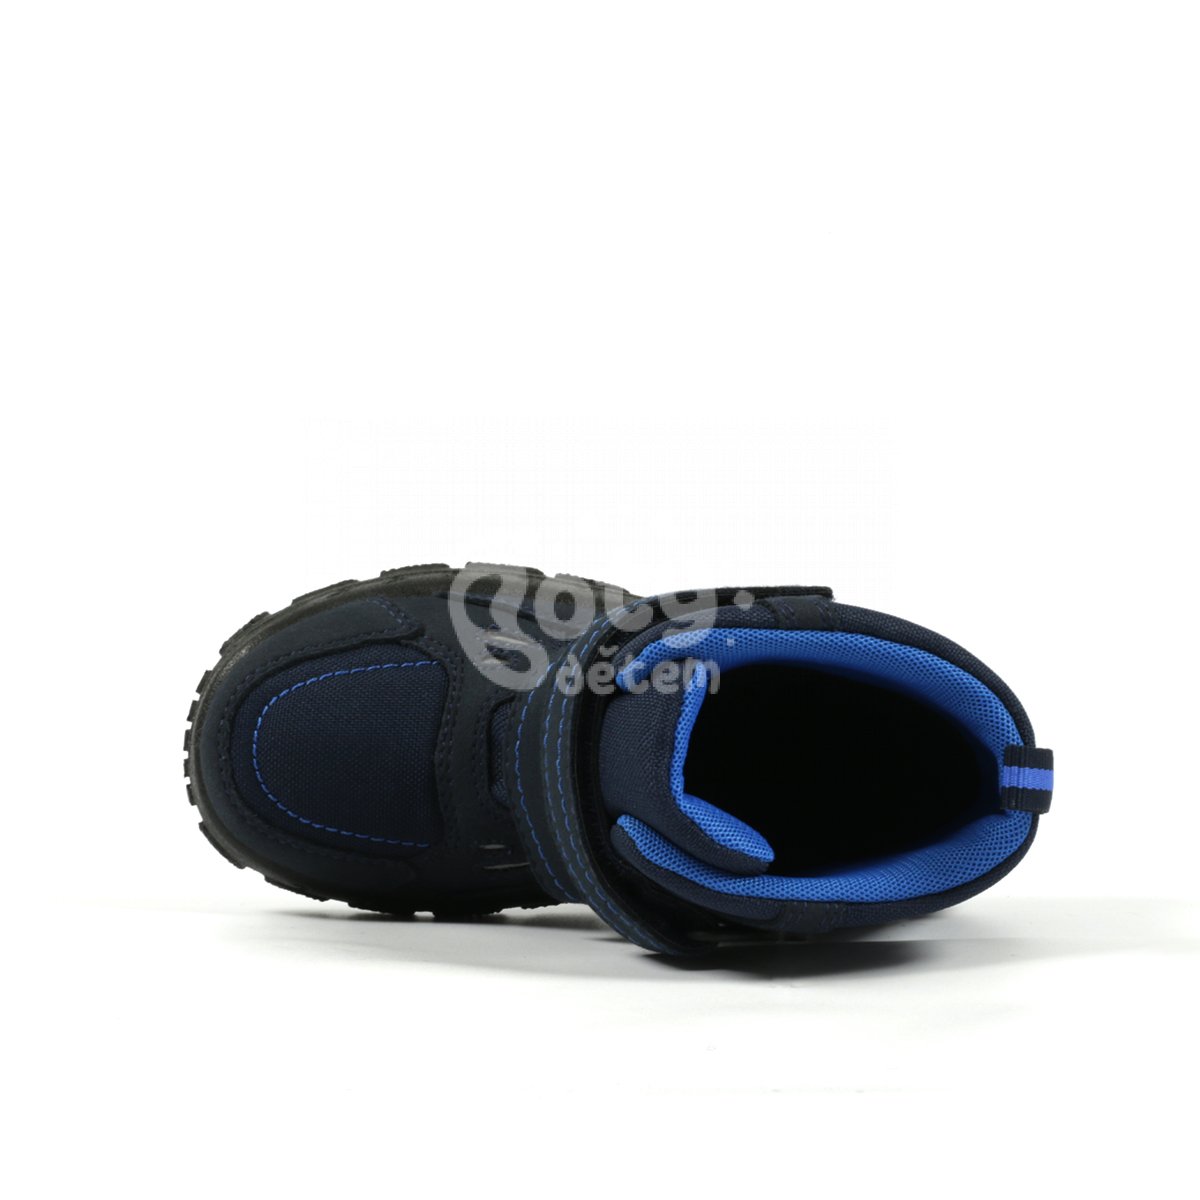 Zimní obuv Davos Richter 7904-6191-7202 modrá